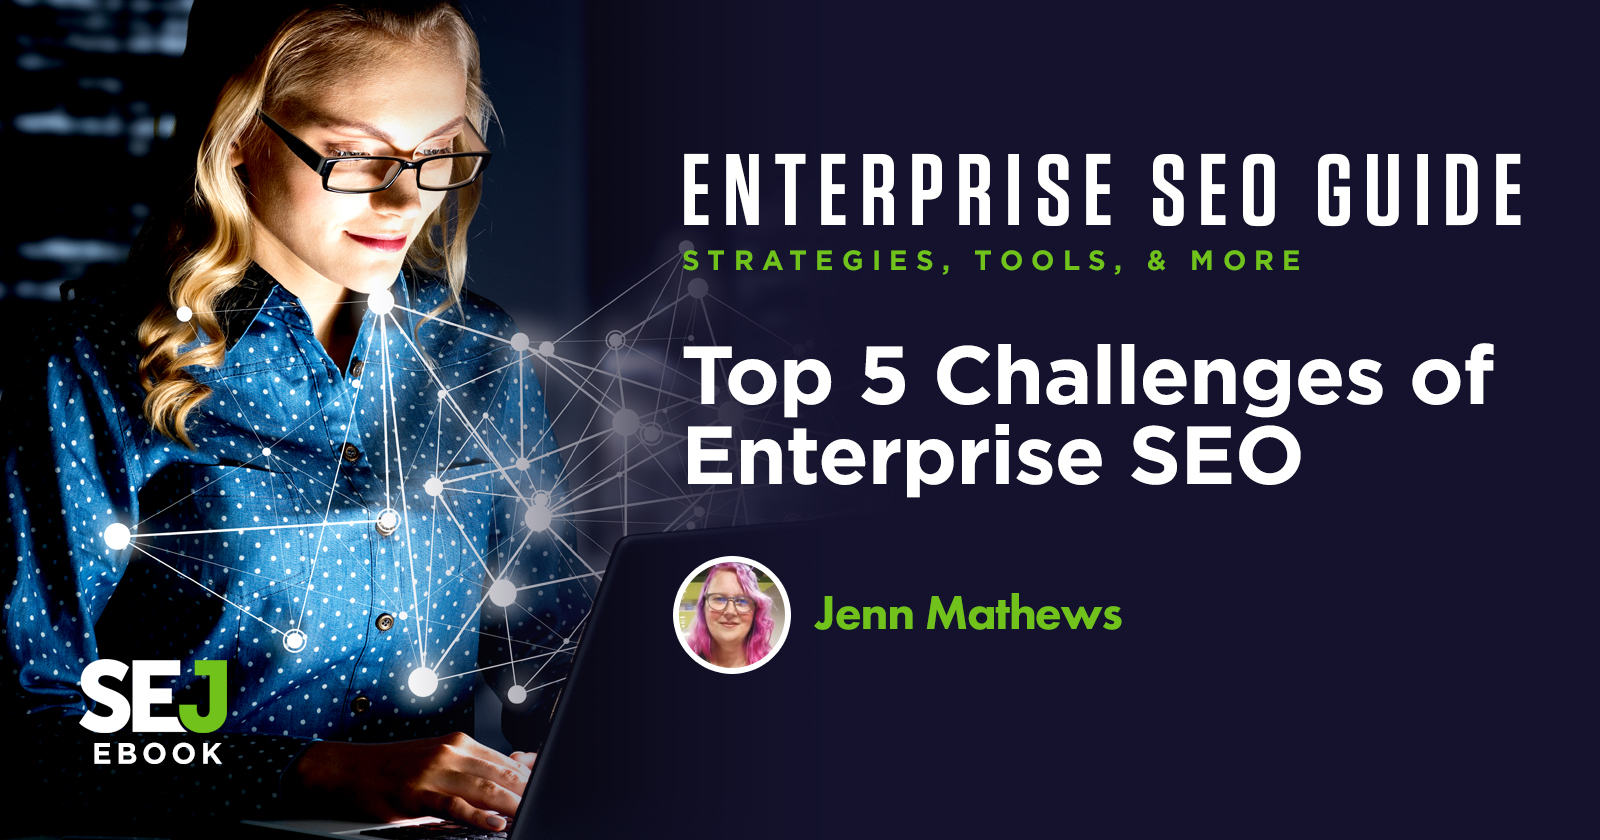 Top 5 Challenges of Enterprise SEO - Jenn Mathews